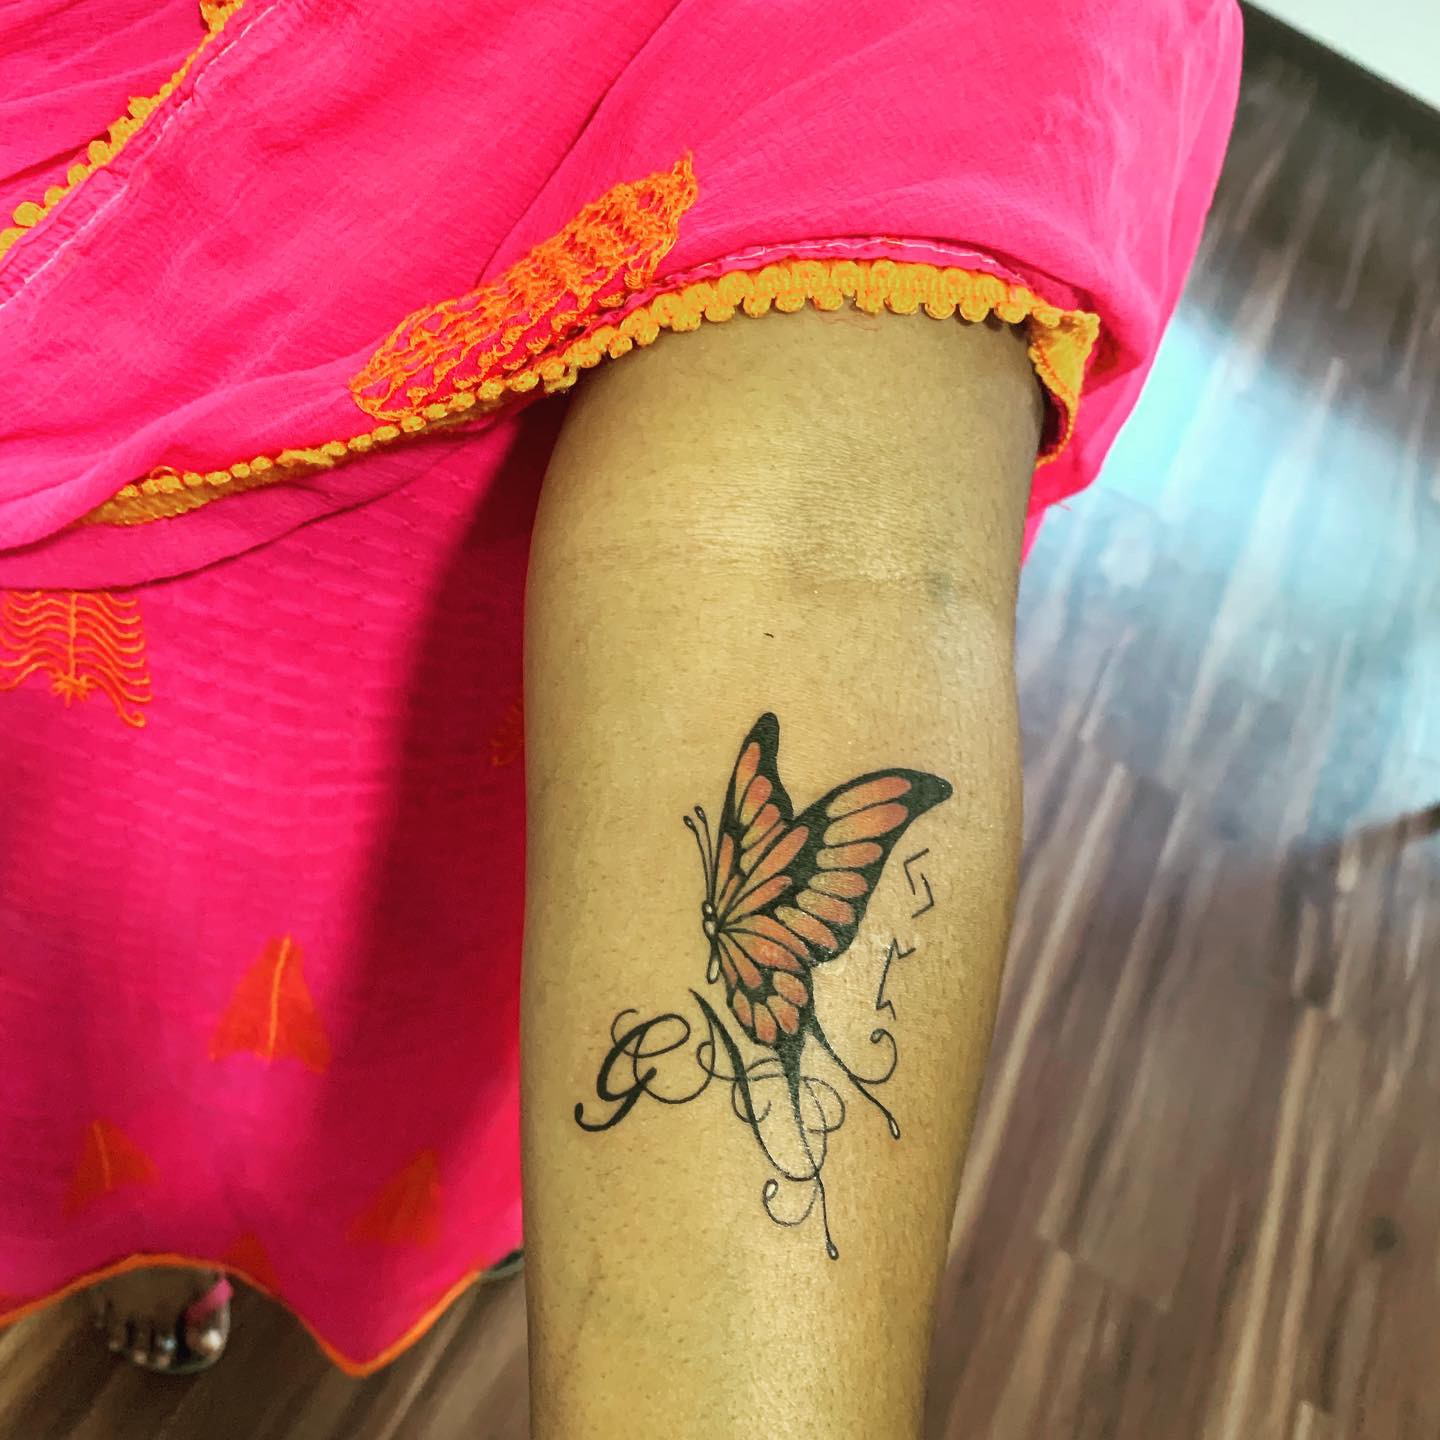 Inkpulse in ThiruvanmiyurChennai  Best Tattoo Designers in Chennai   Justdial